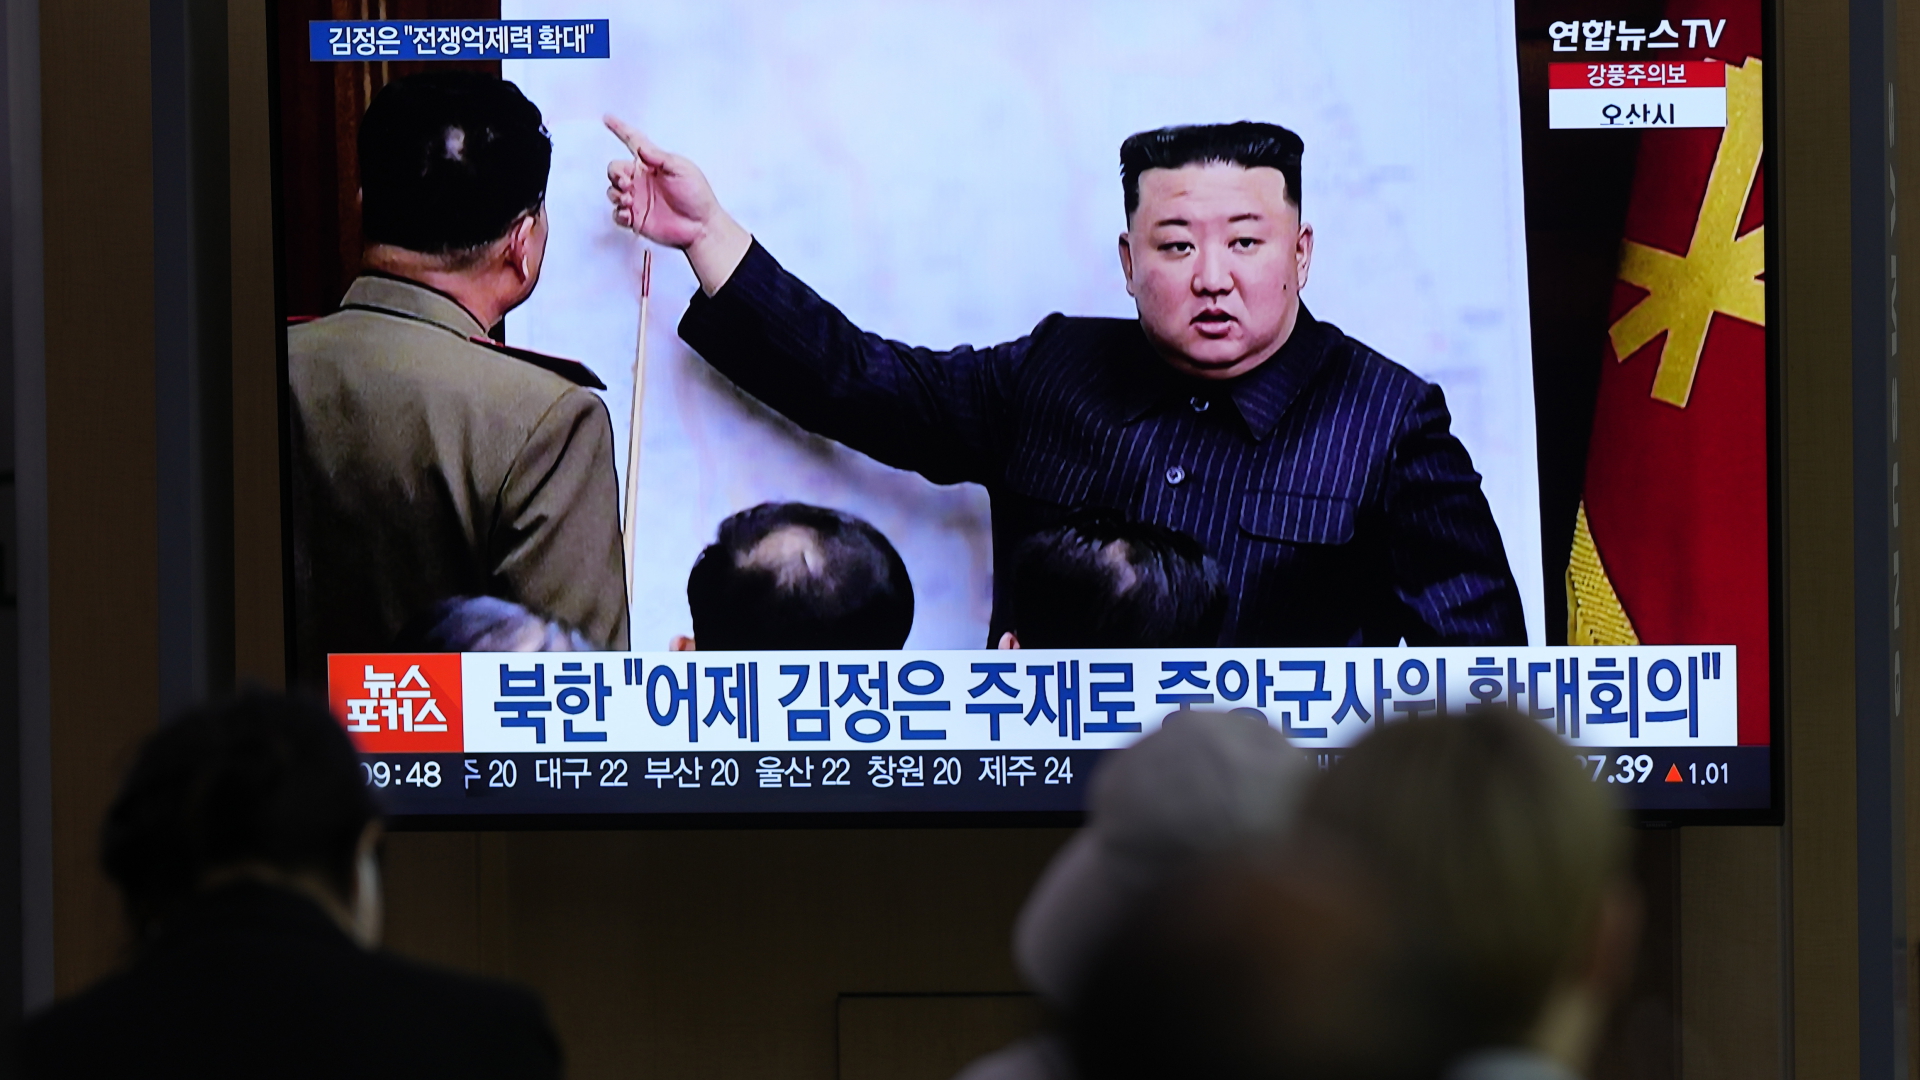 Ein Fernsehbildschirm zeigt ein Bild des nordkoreanischen Führers Kim Jong Un während einer Nachrichtensendung im Bahnhof von Seoul (Archivbild). 